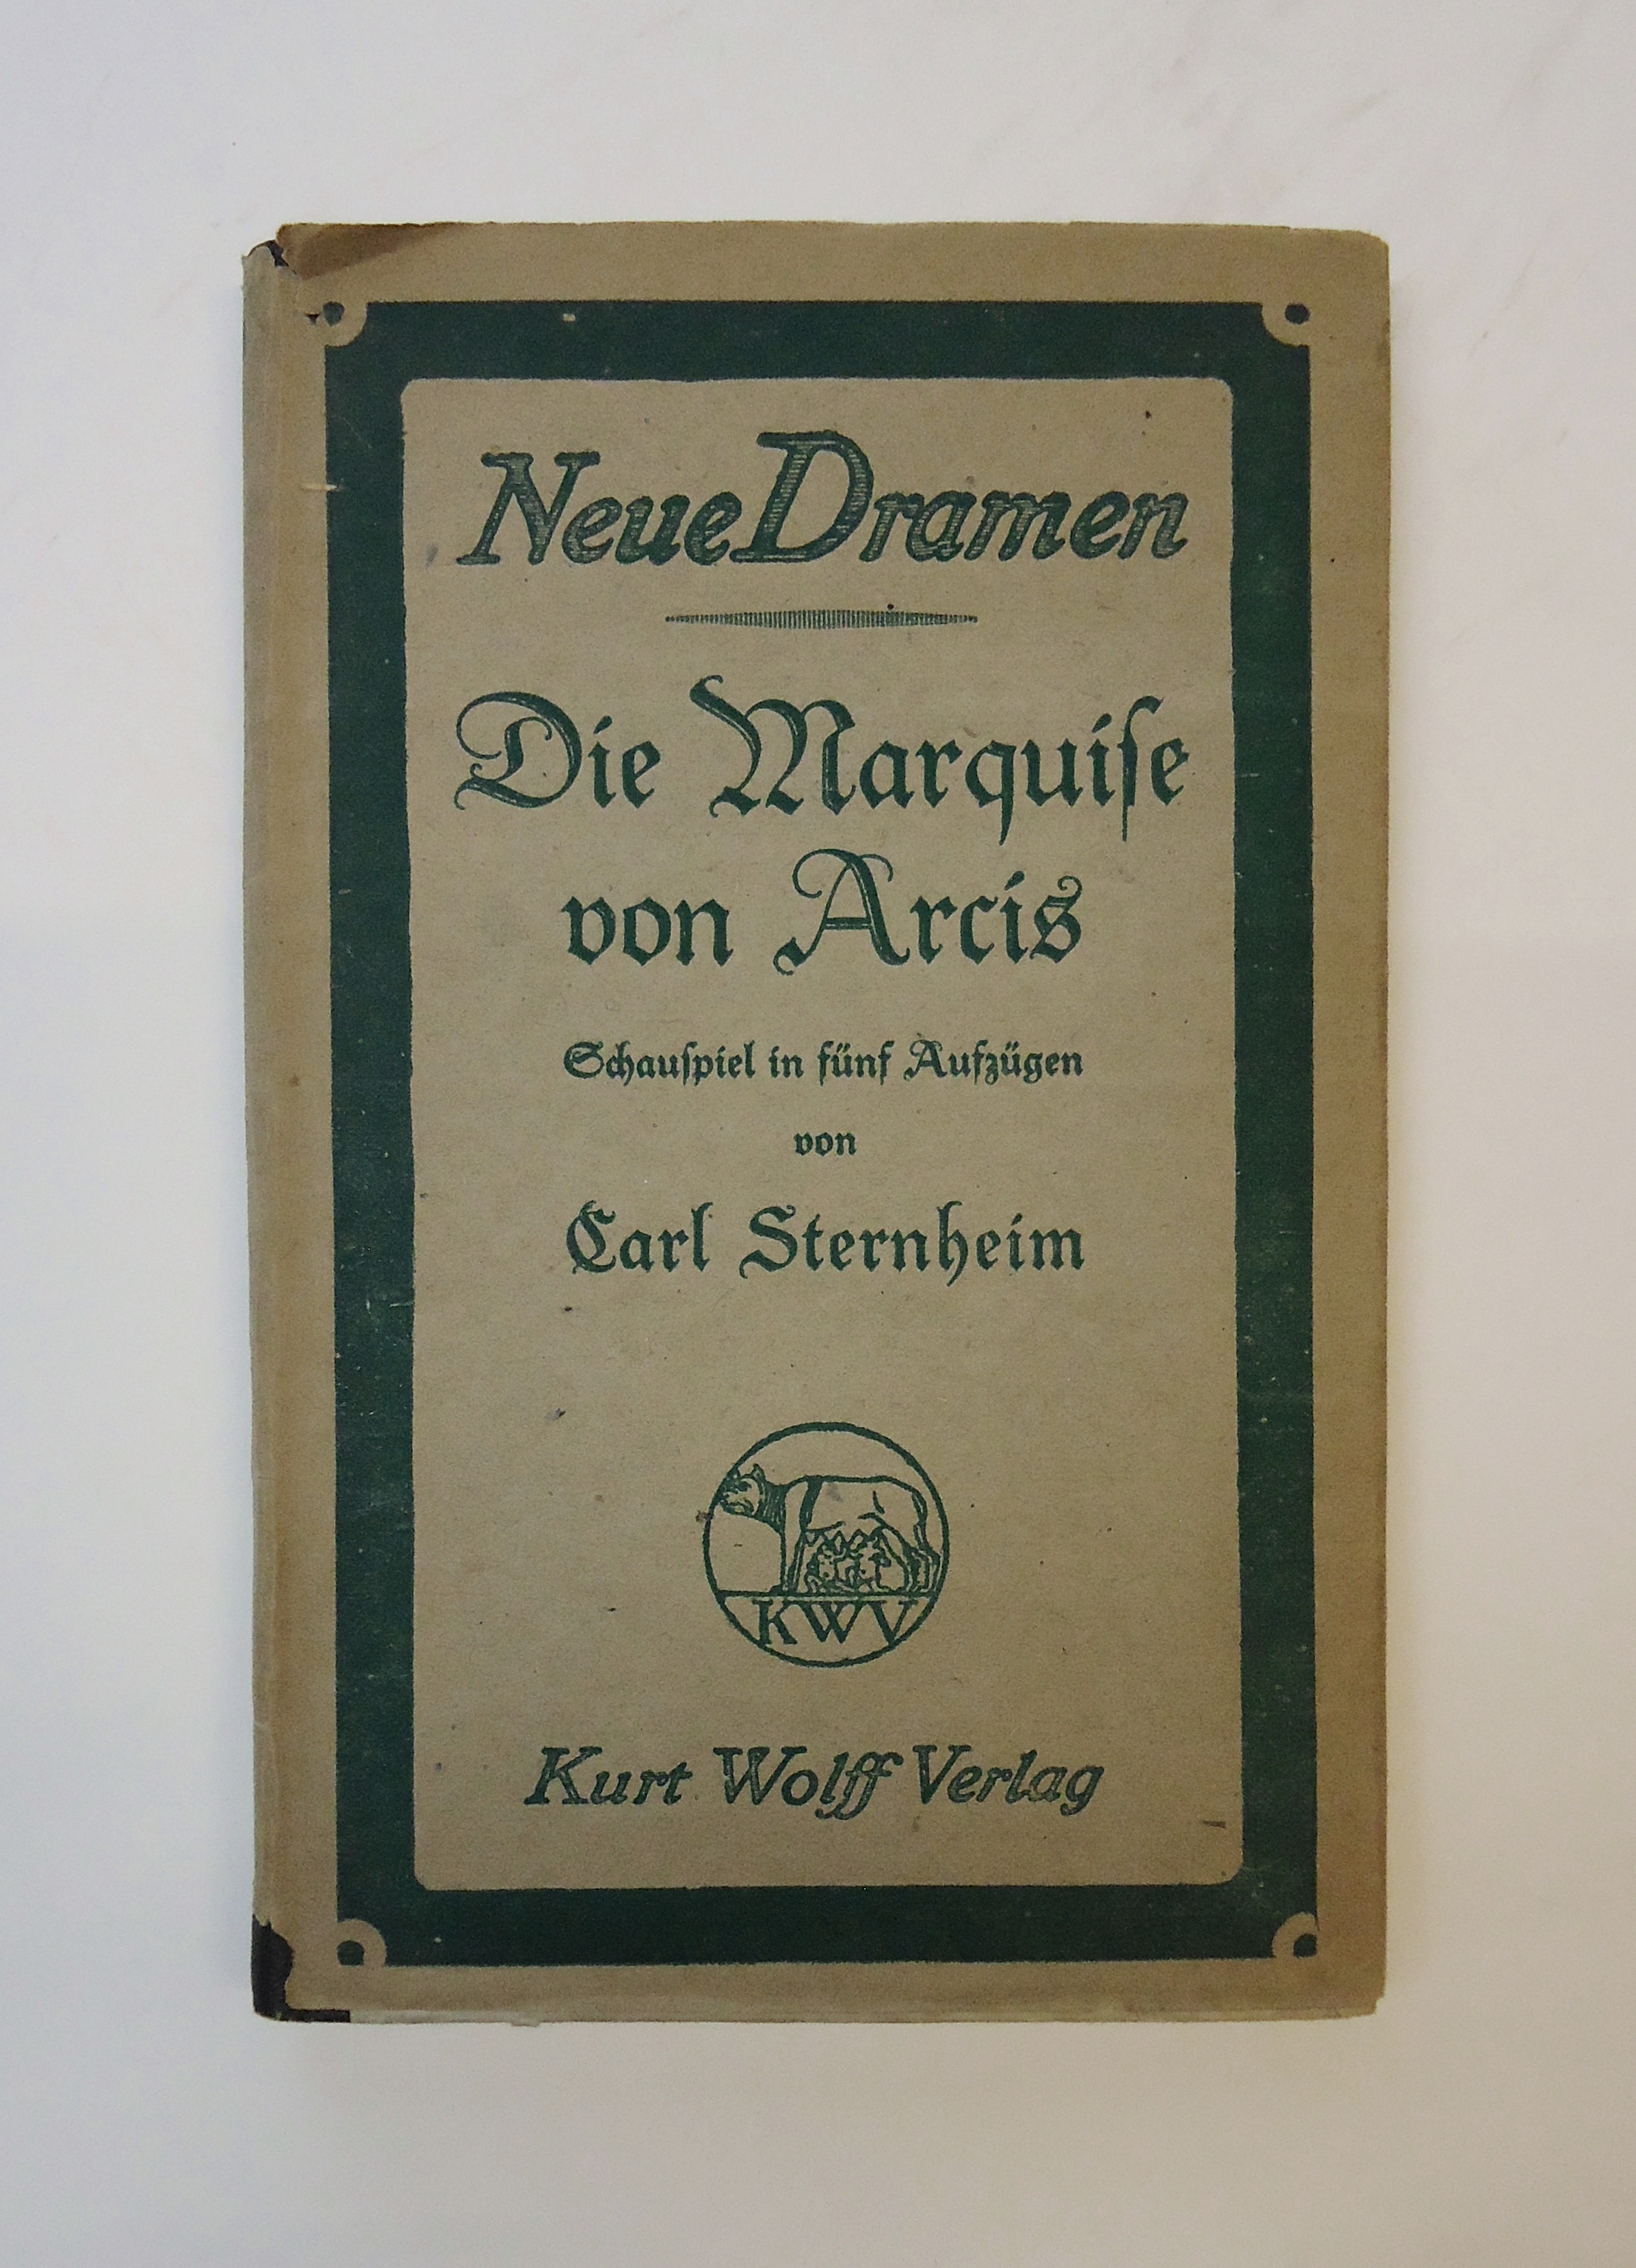 Die Marquise von Arcis. Schauspiel in fünf Aufzügen nach Diderot.